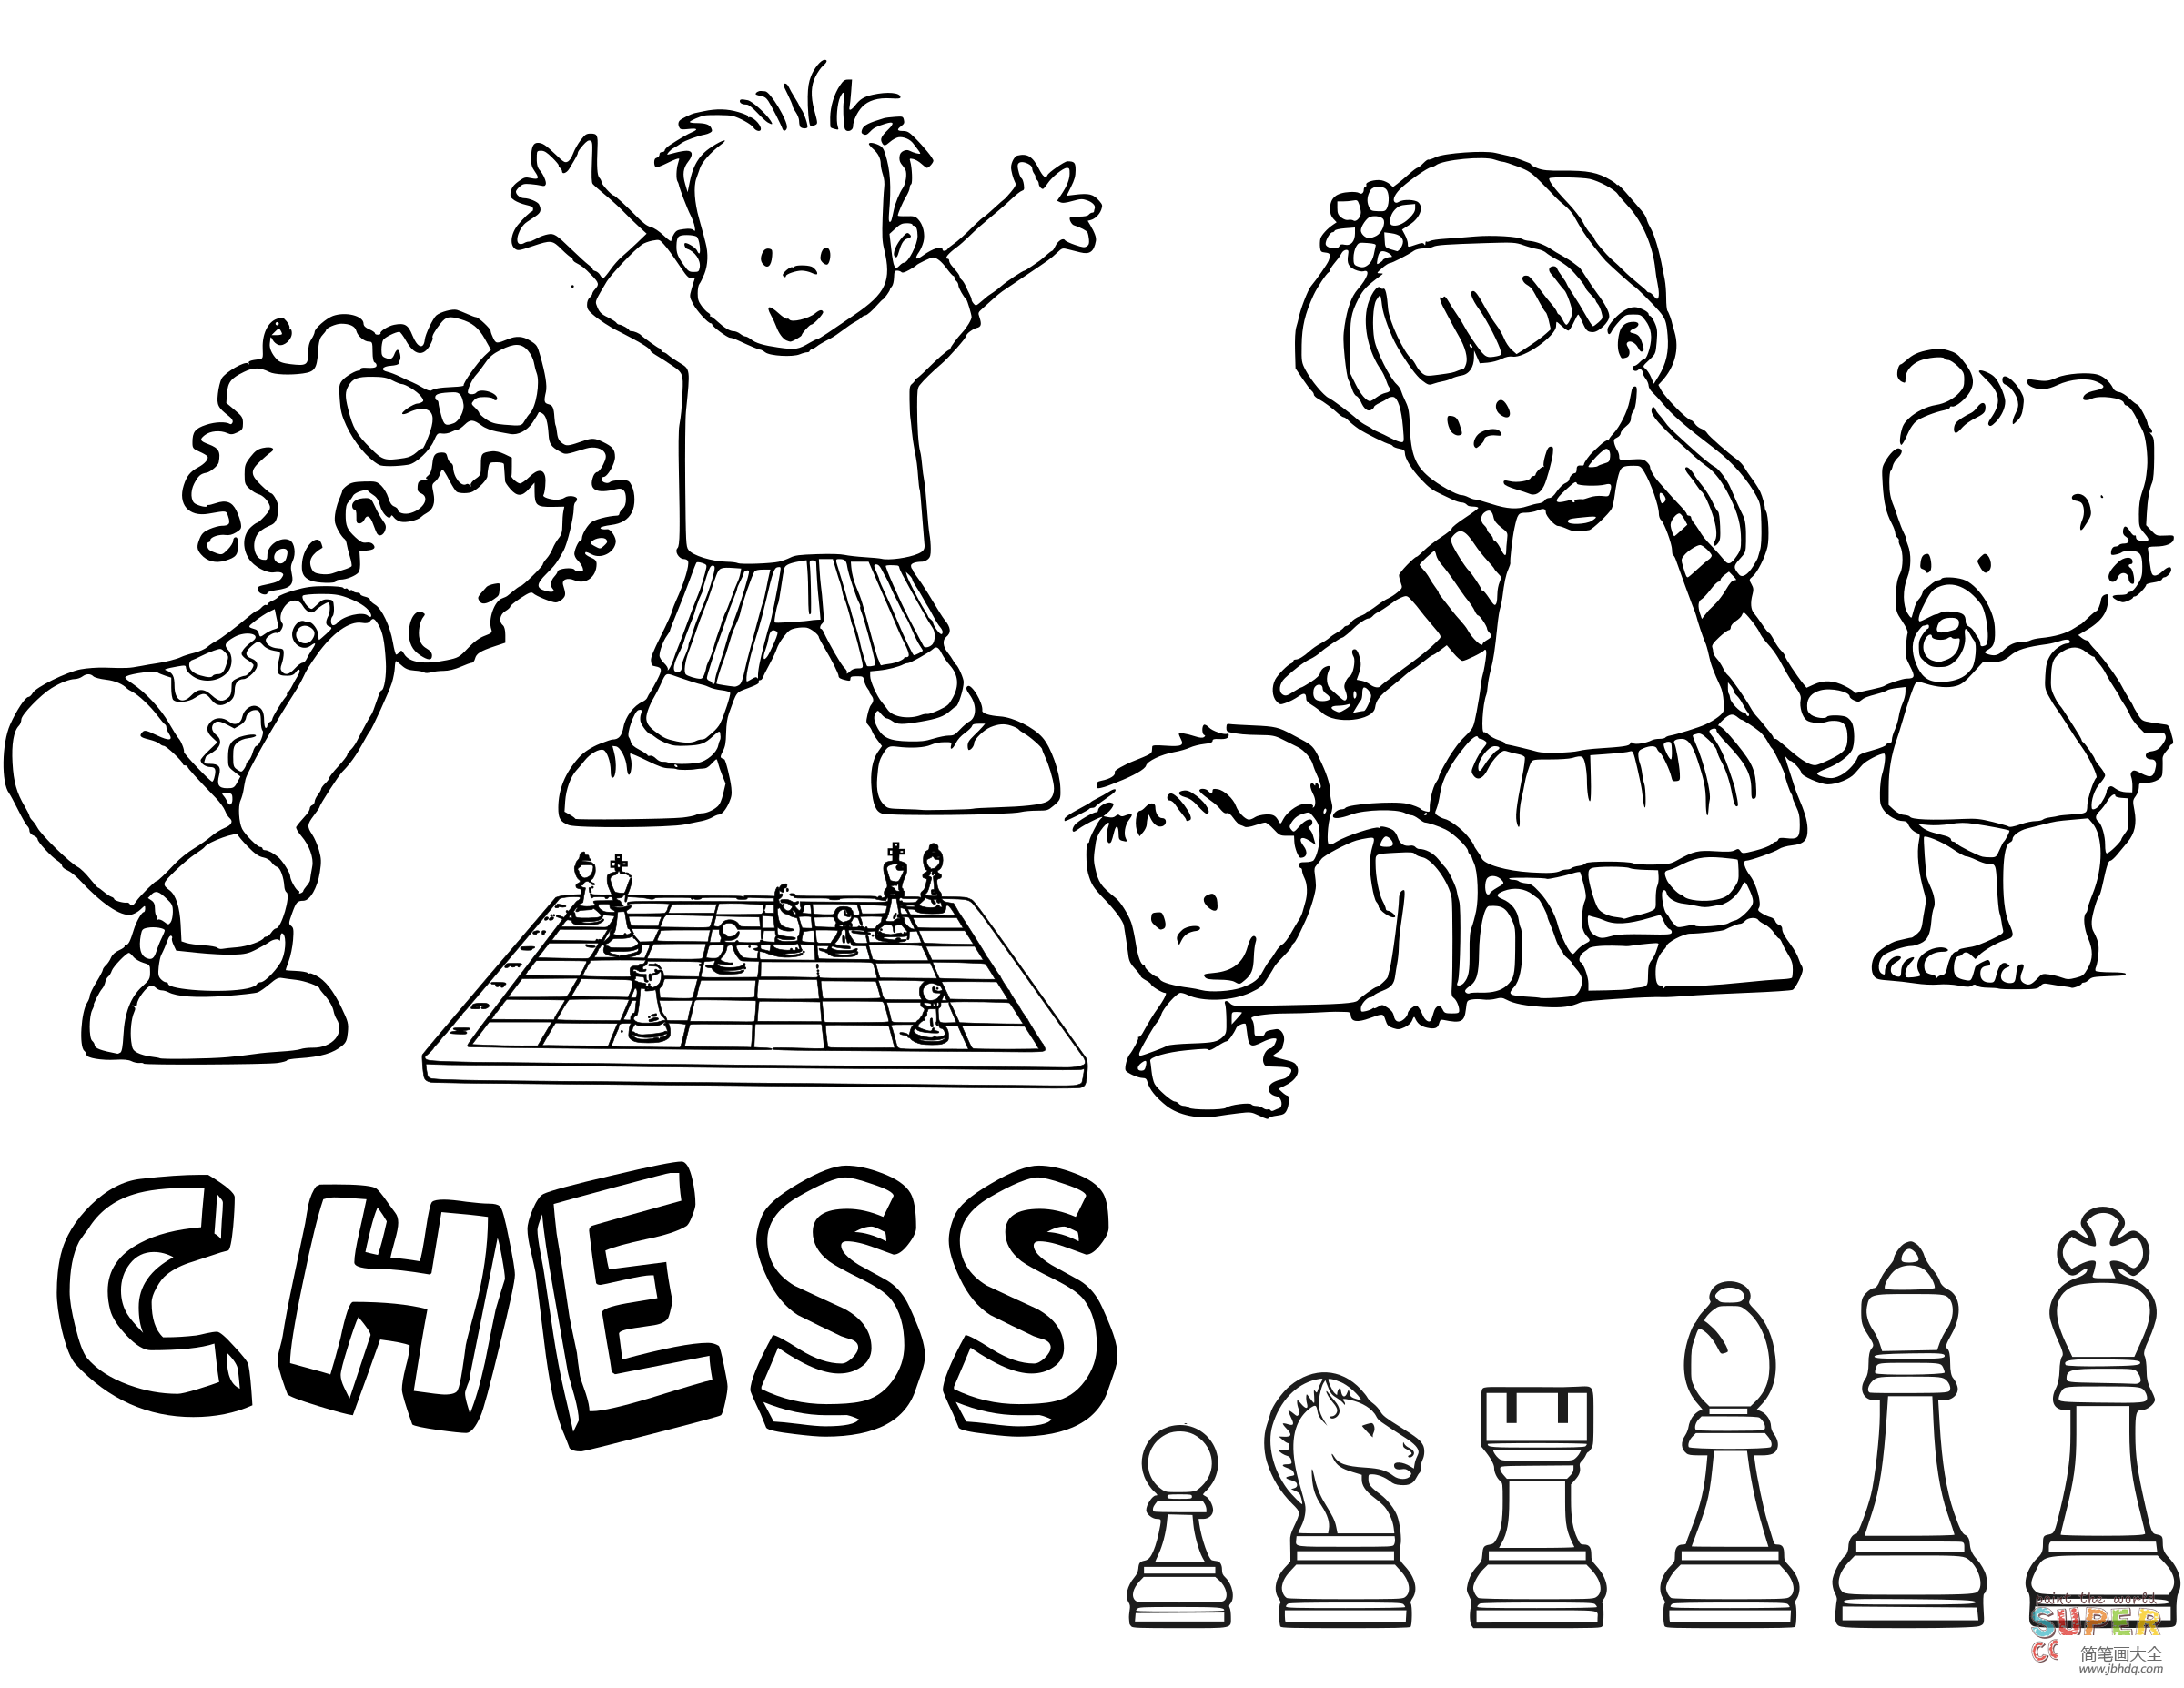 一群小朋友在下棋